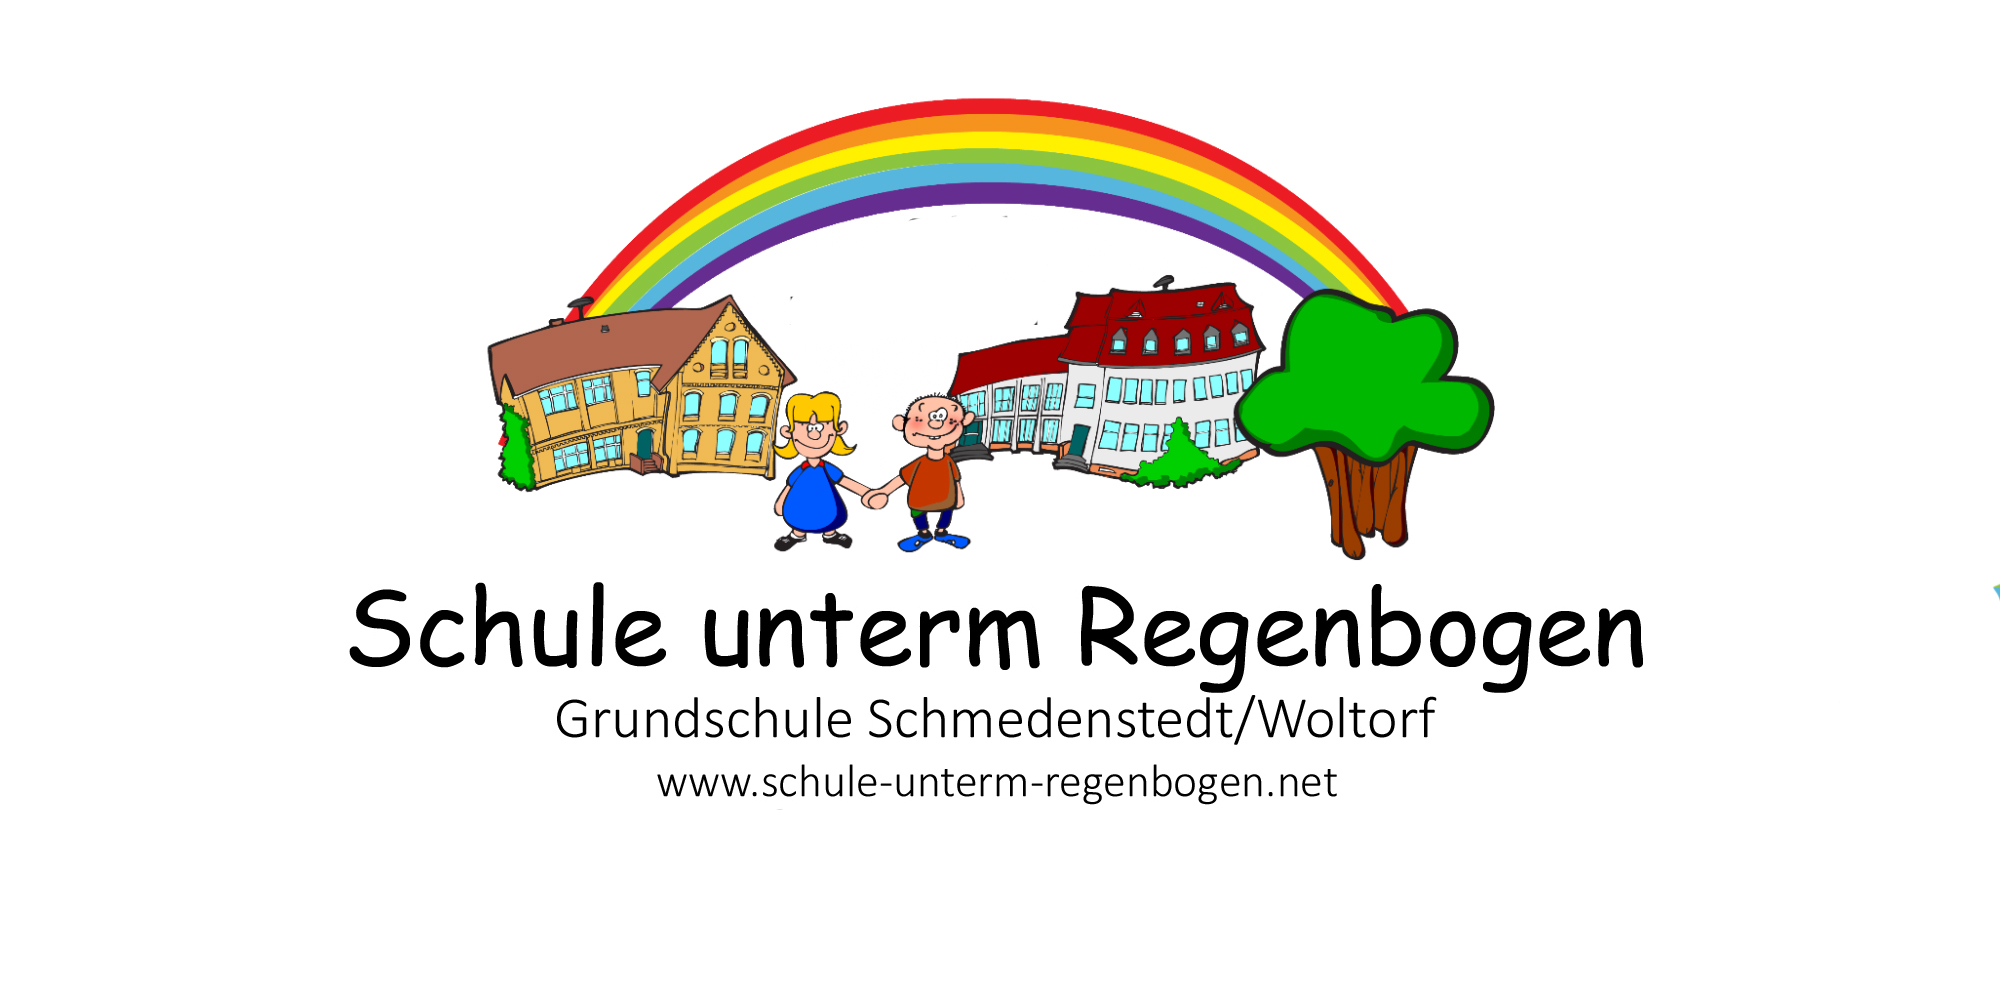 Schule unterm Regenbogen Grundschule Schmedenstedt